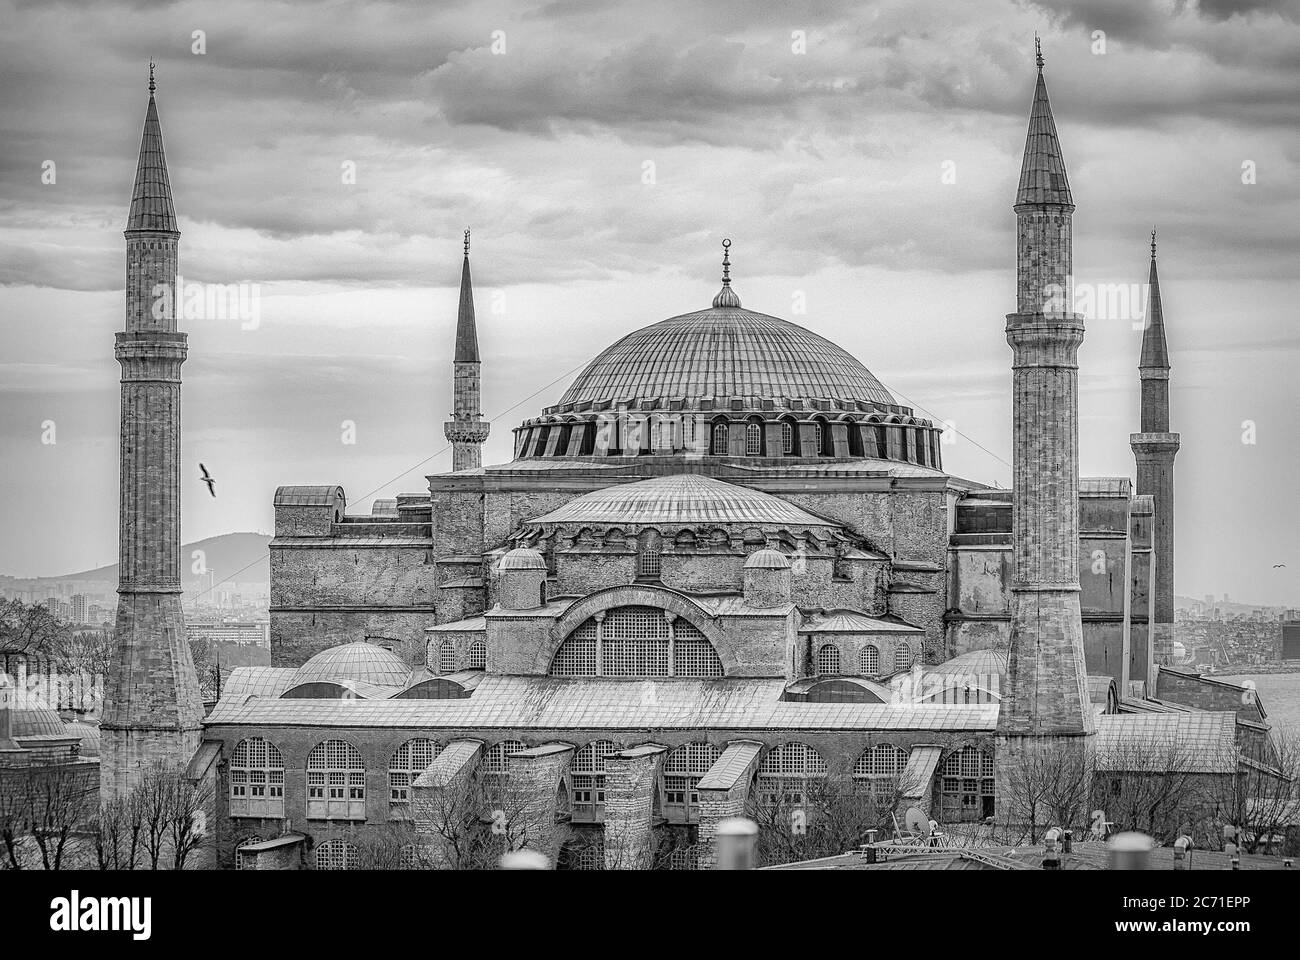 Hagia sophia ist das weltberühmte Wahrzeichen in Istanbul, Türkei, das das Leben als Kirche, Moschee und Museum gesehen hat und vor kurzem wieder umgebaut wurde Stockfoto